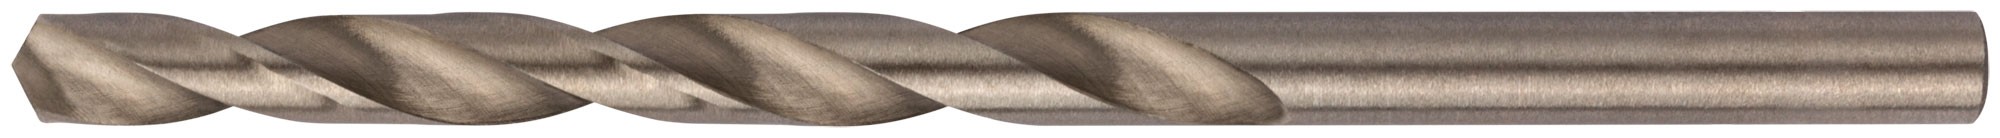 Сверла по металлу HSS полированные 4,8 мм (10 шт.)